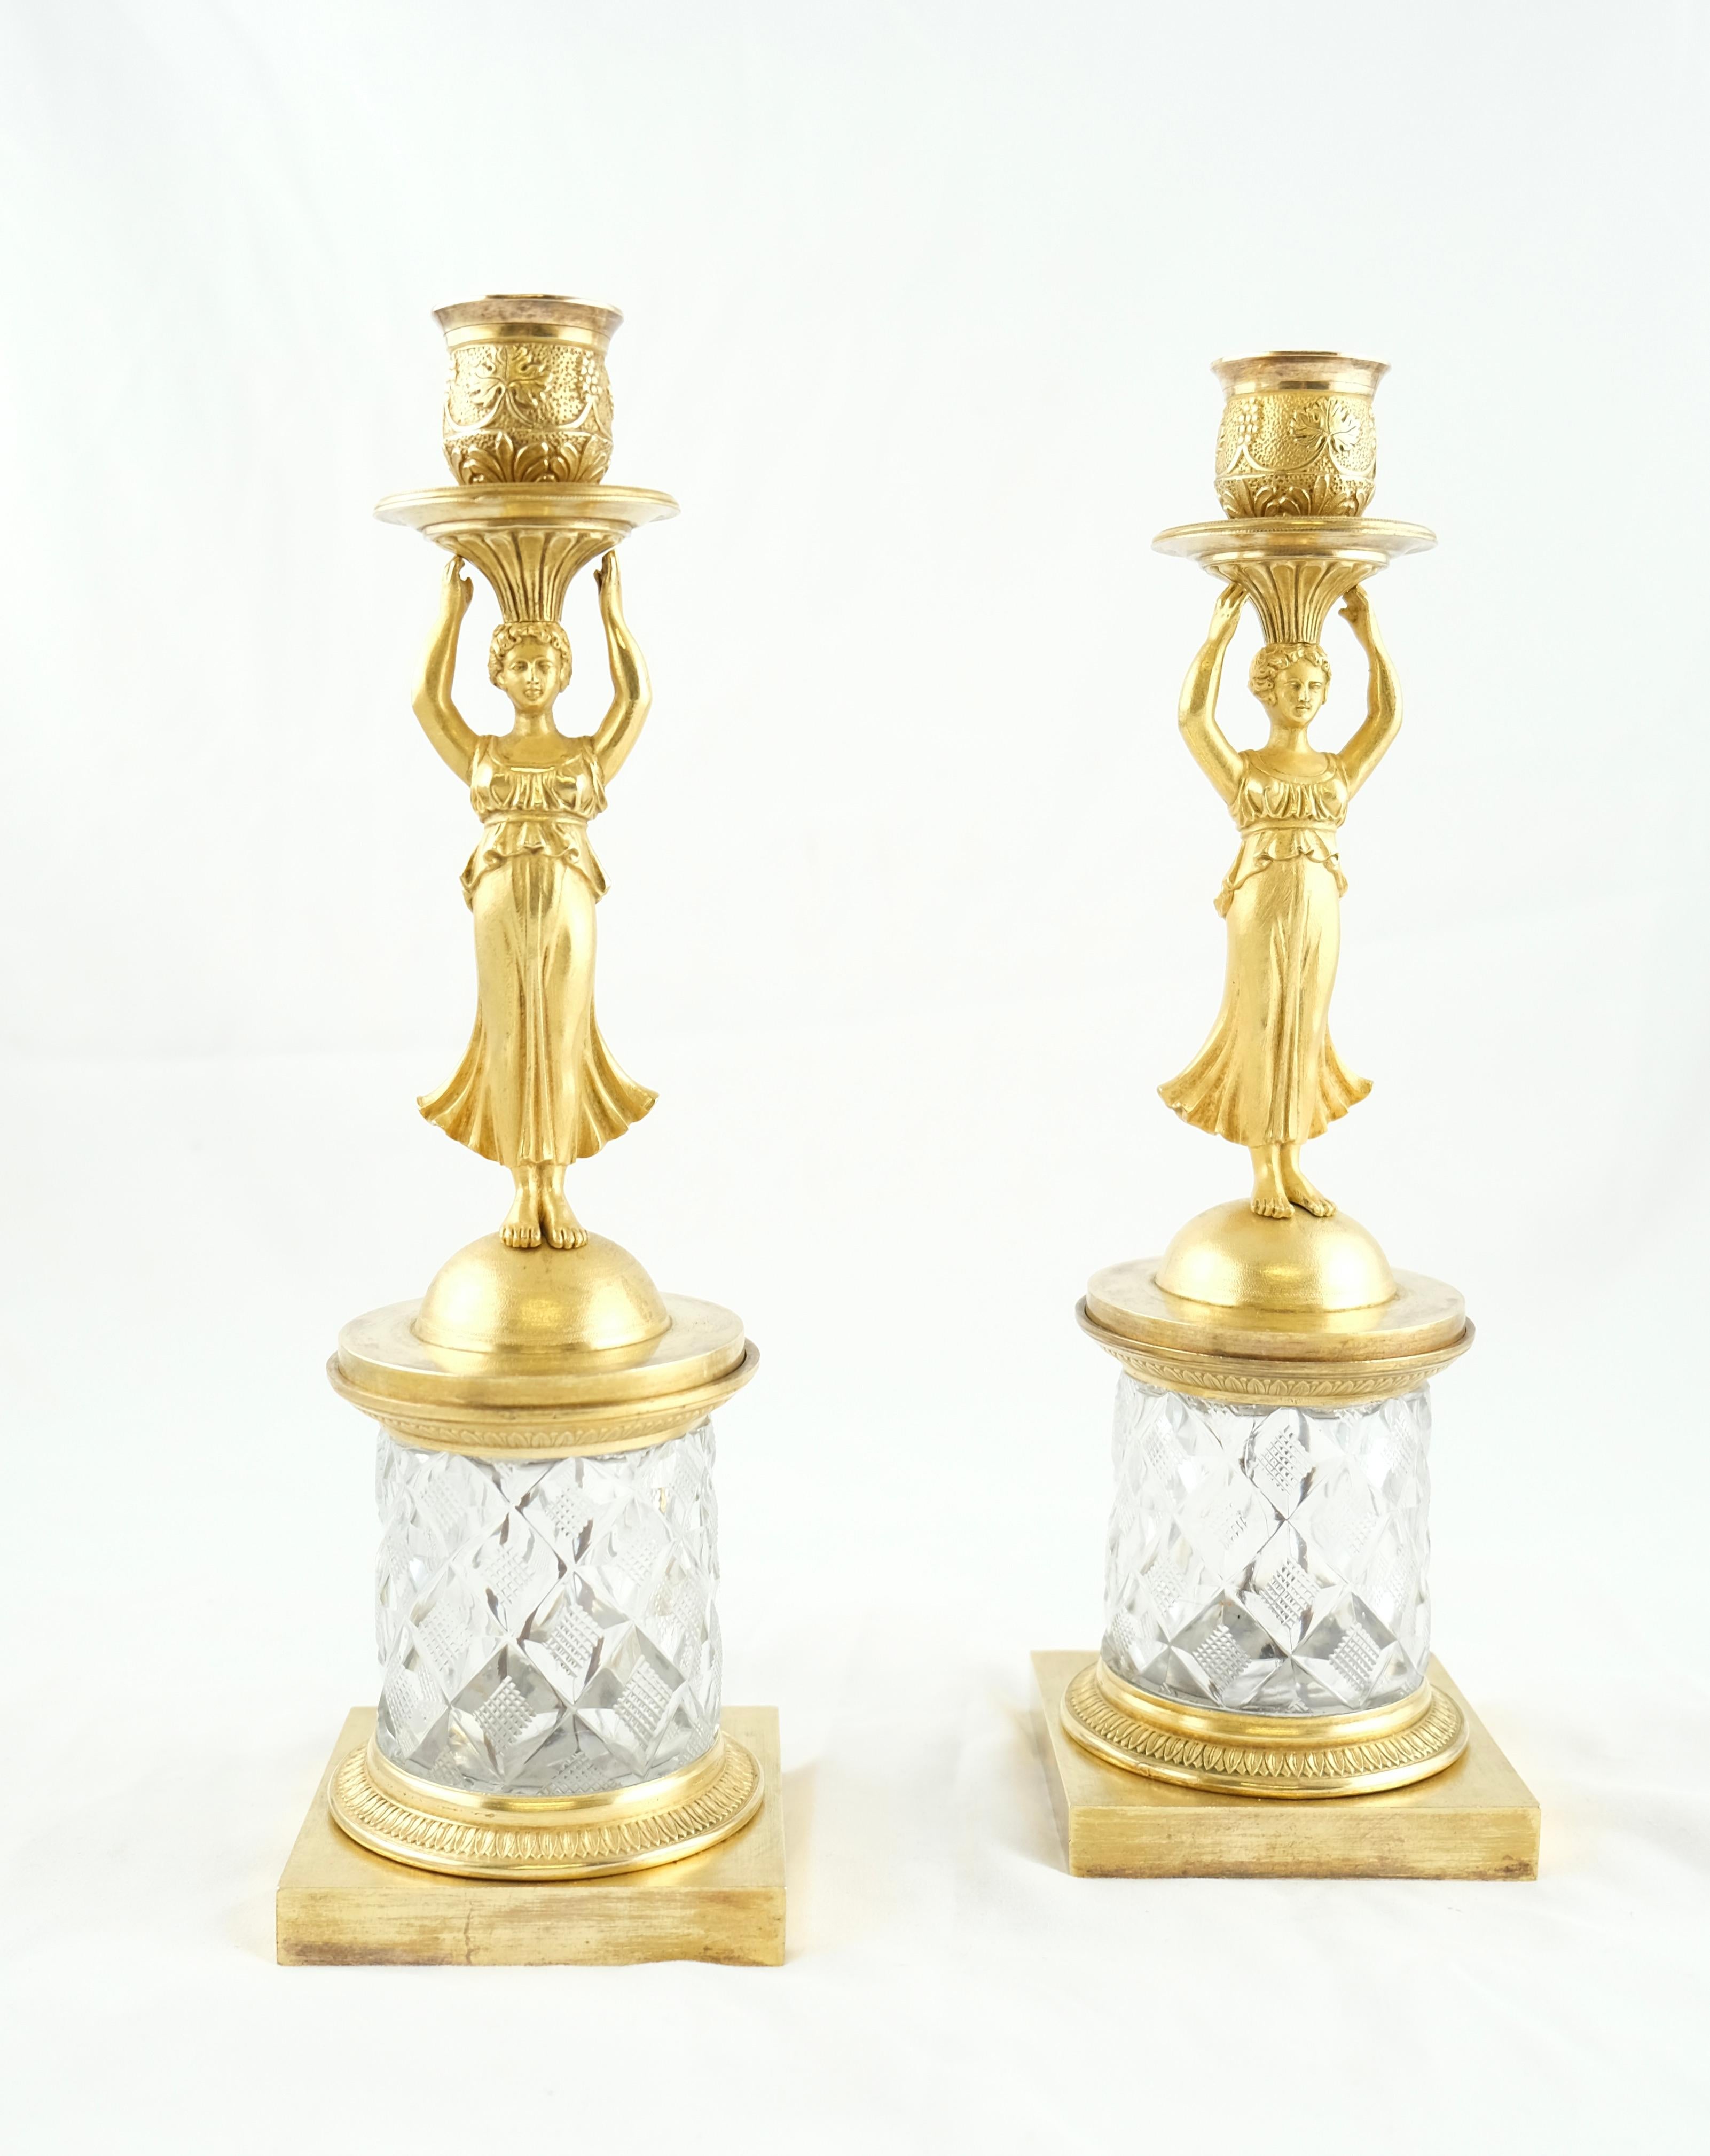 Une charmante paire de chandeliers. La plupart des chandeliers fabriqués durant cette période, Louis XV, Directoire et Empire, utilisent des bronzes qui sont soit dorés, soit patinés. Ces chandeliers ont des bases en cristal taillé, ce qui les rend